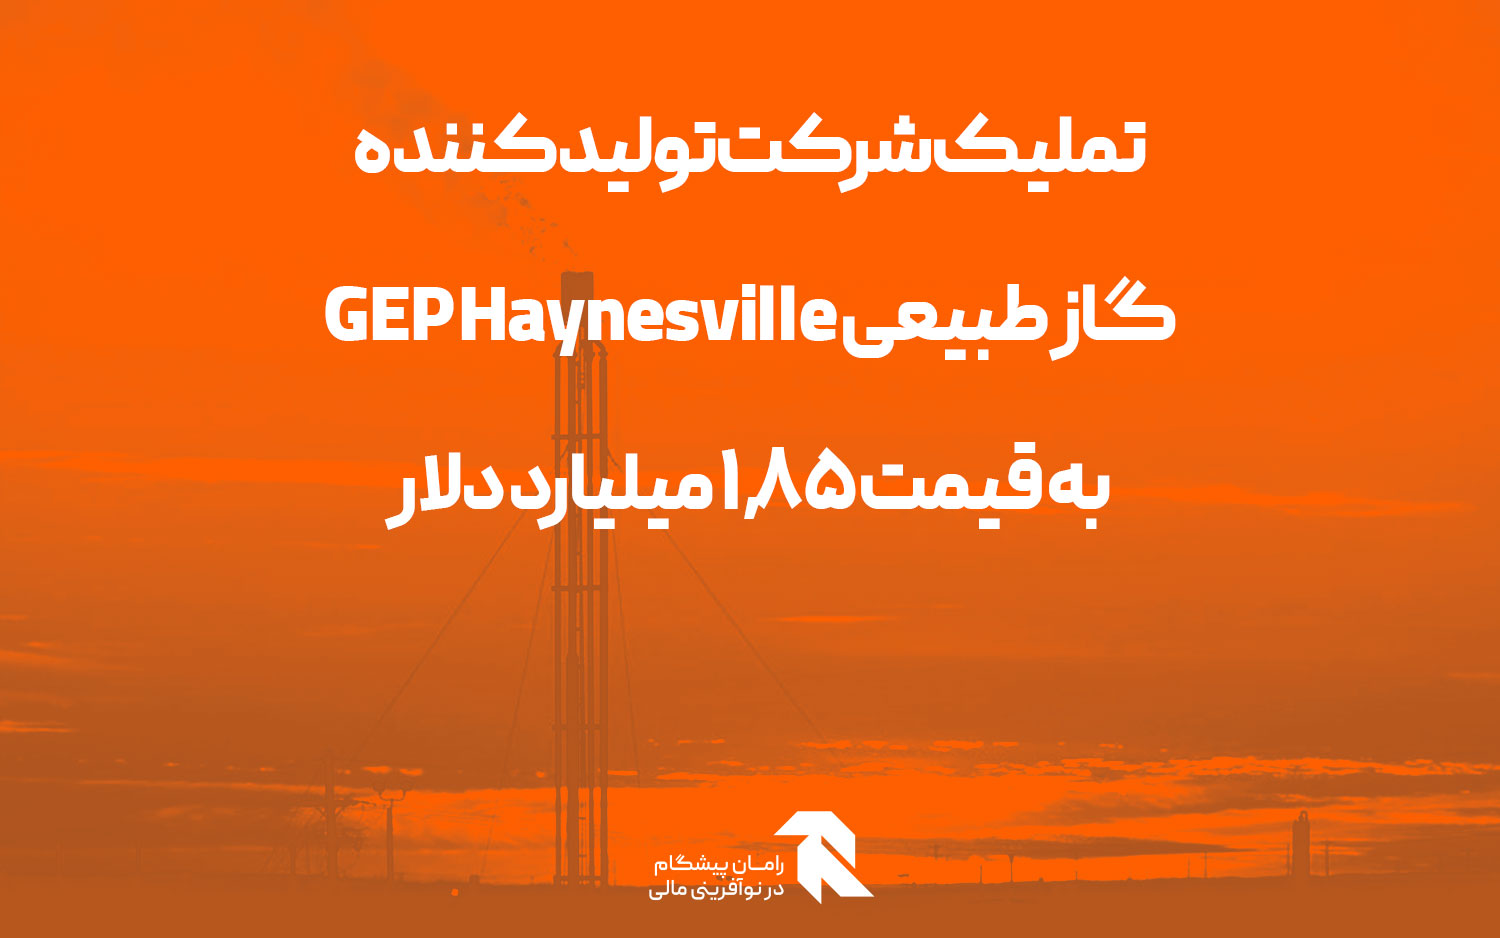 تملیک شرکت تولیدکننده گاز طبیعی GEP Haynesville به قیمت 1.85 میلیارد دلار